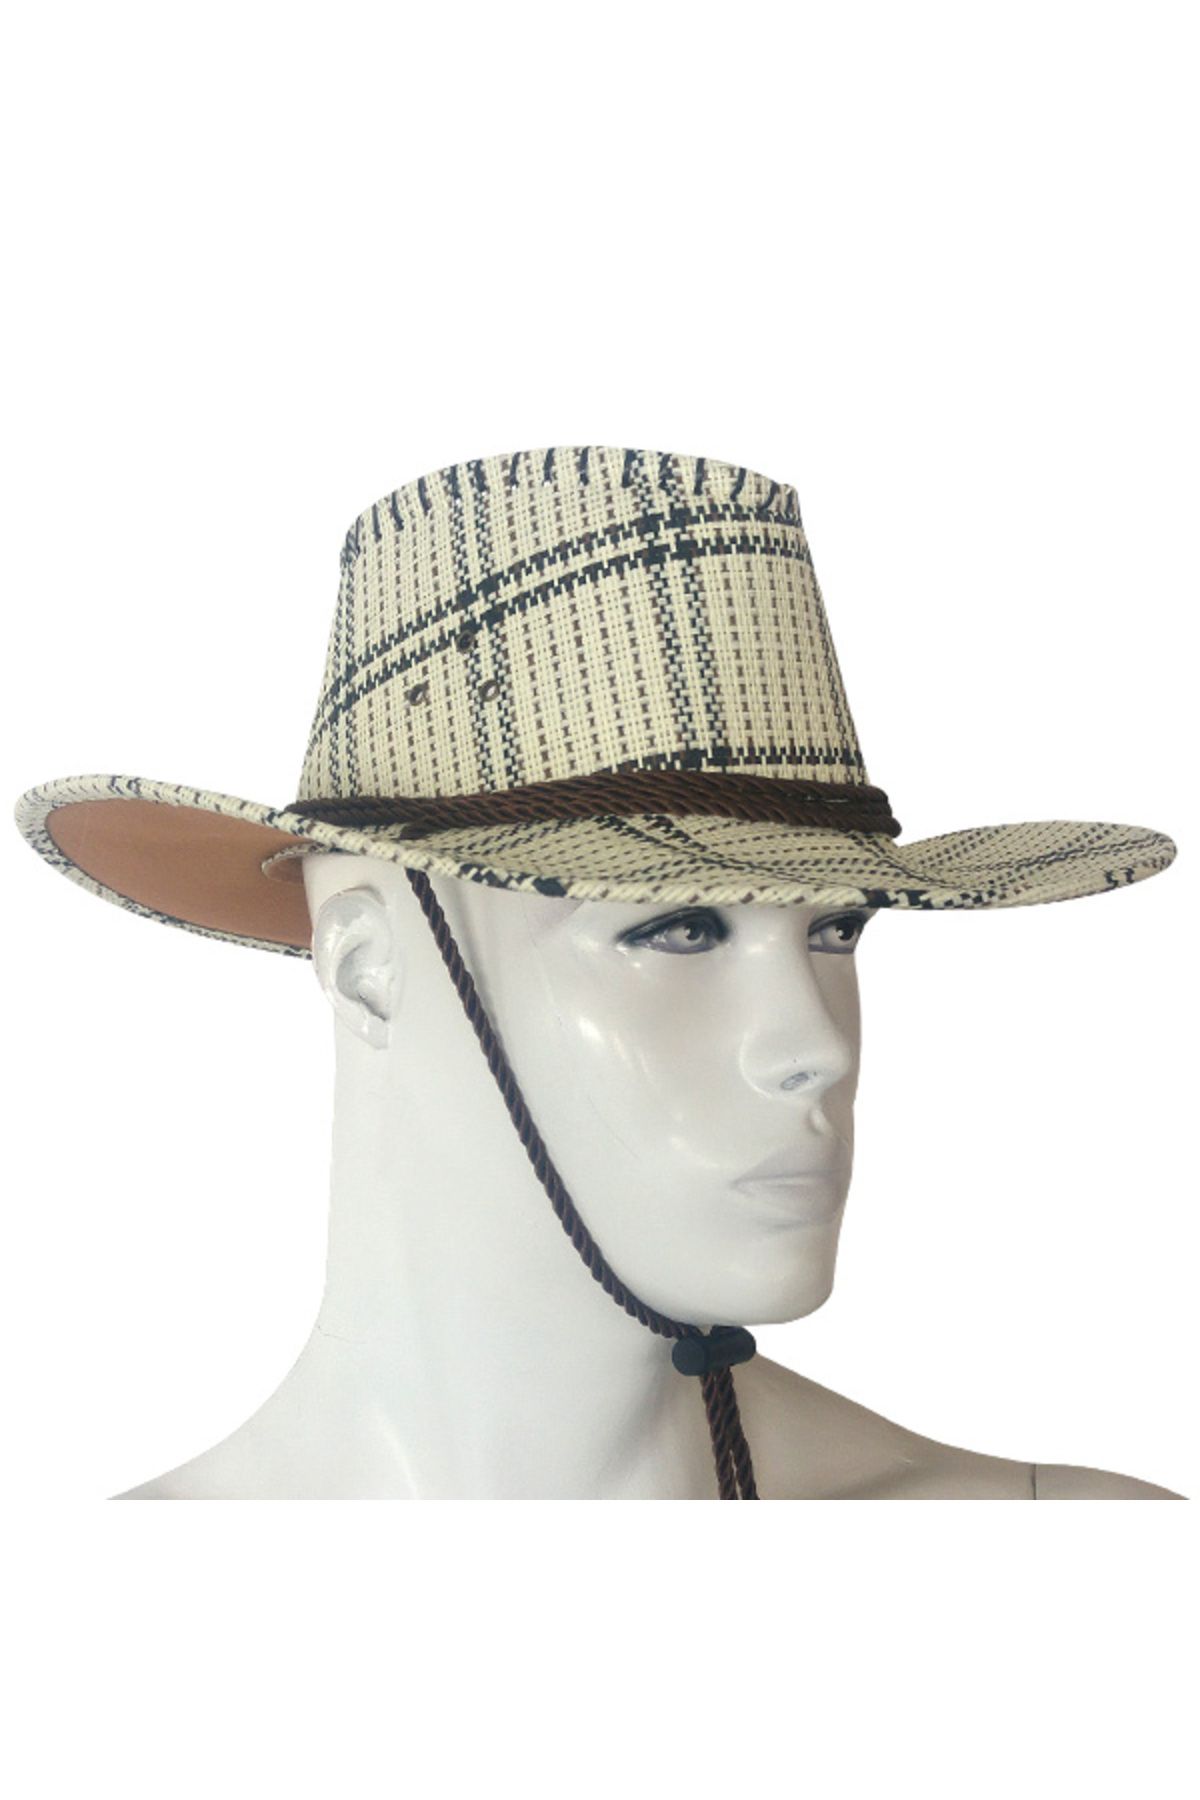 Genel Markalar Hs-11079 Kovboy Şapka Desenli Beyaz